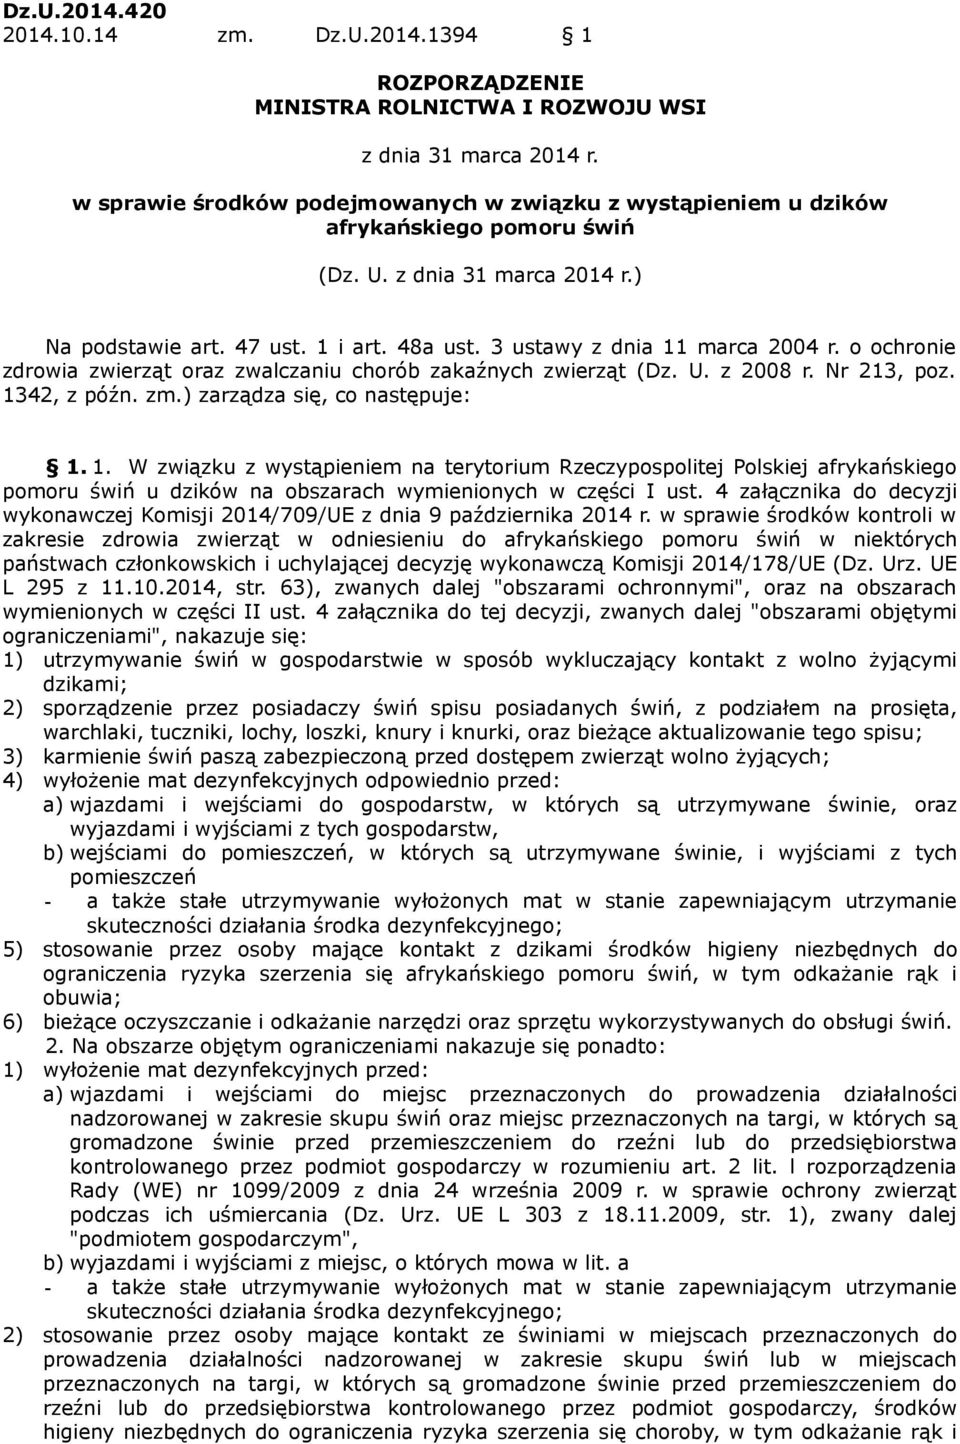 3 ustawy z dnia 11 marca 2004 r. o ochronie zdrowia zwierząt oraz zwalczaniu chorób zakaźnych zwierząt (Dz. U. z 2008 r. Nr 213, poz. 1342, z późn. zm.) zarządza się, co następuje: 1. 1. W związku z wystąpieniem na terytorium Rzeczypospolitej Polskiej afrykańskiego pomoru świń u dzików na obszarach wymienionych w części I ust.